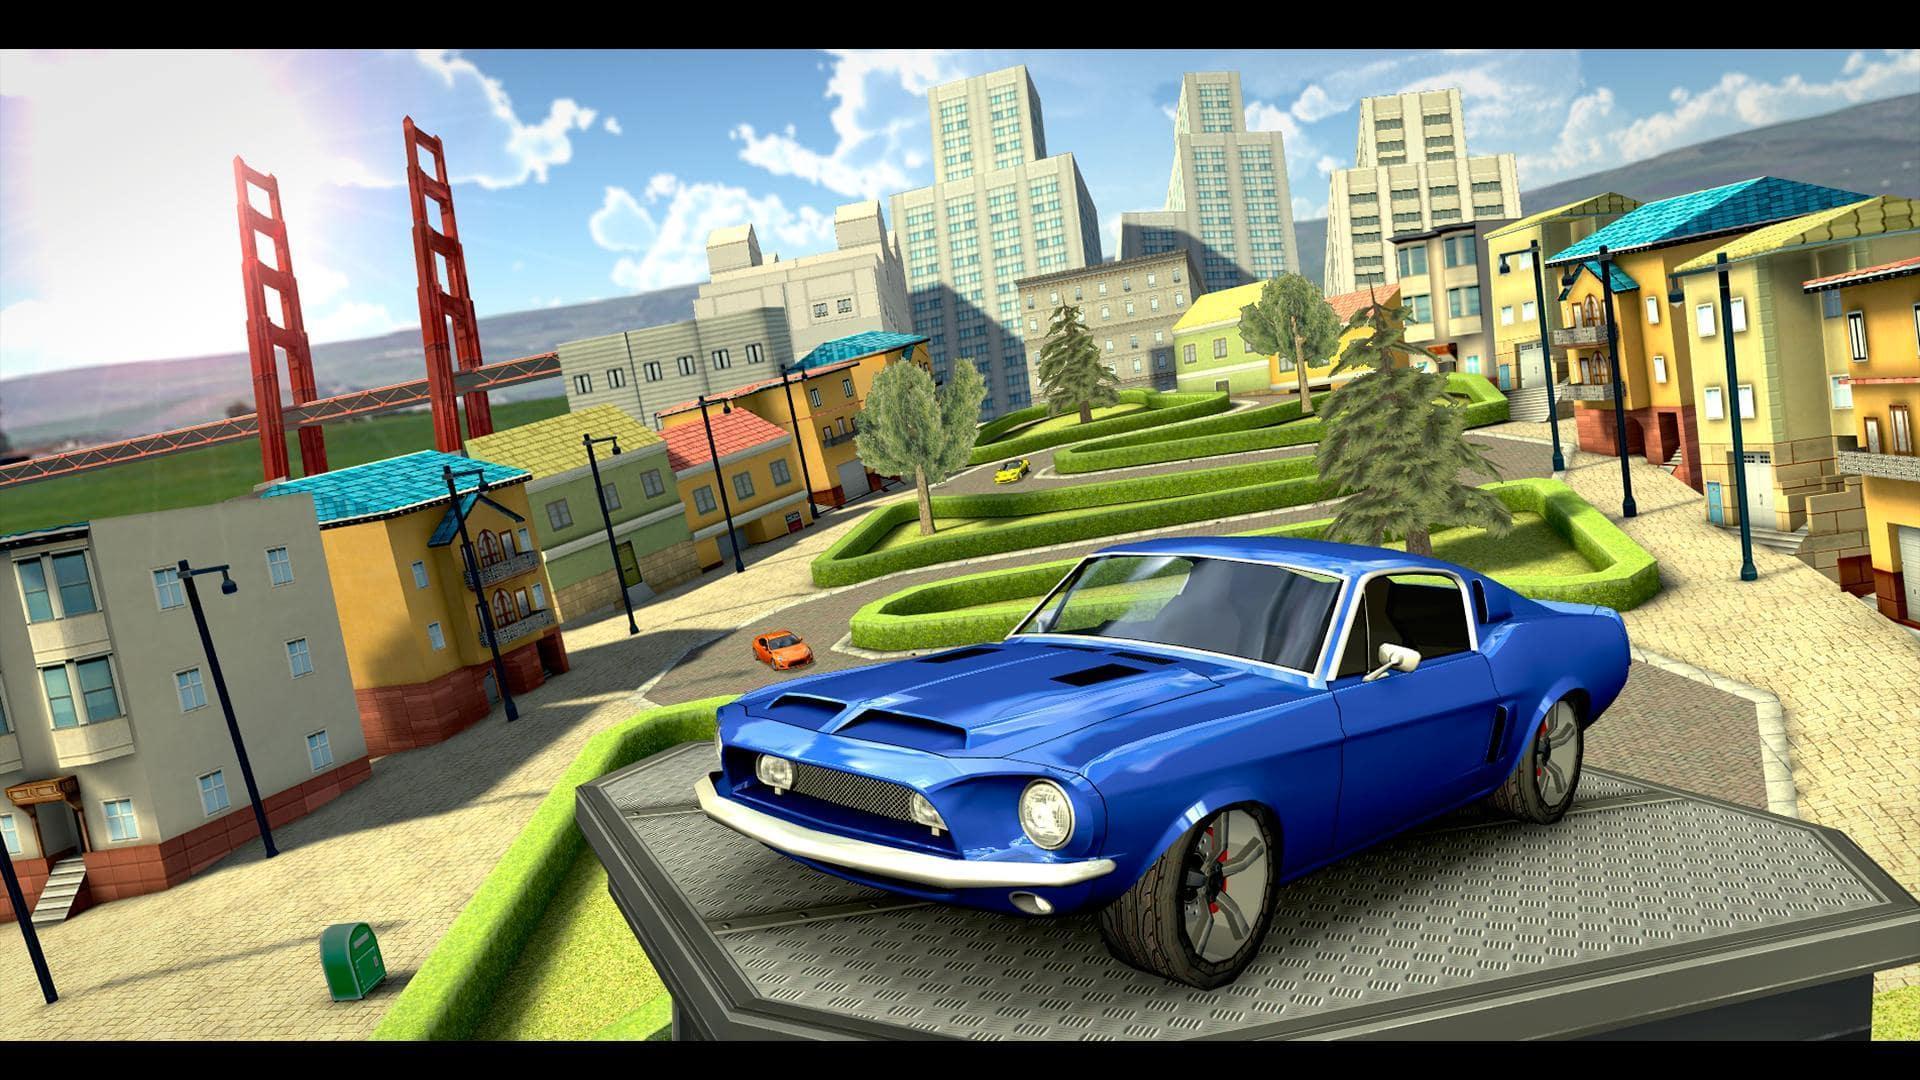 Screenshot 1 of Simulatore di guida automobilistica estrema 1.0